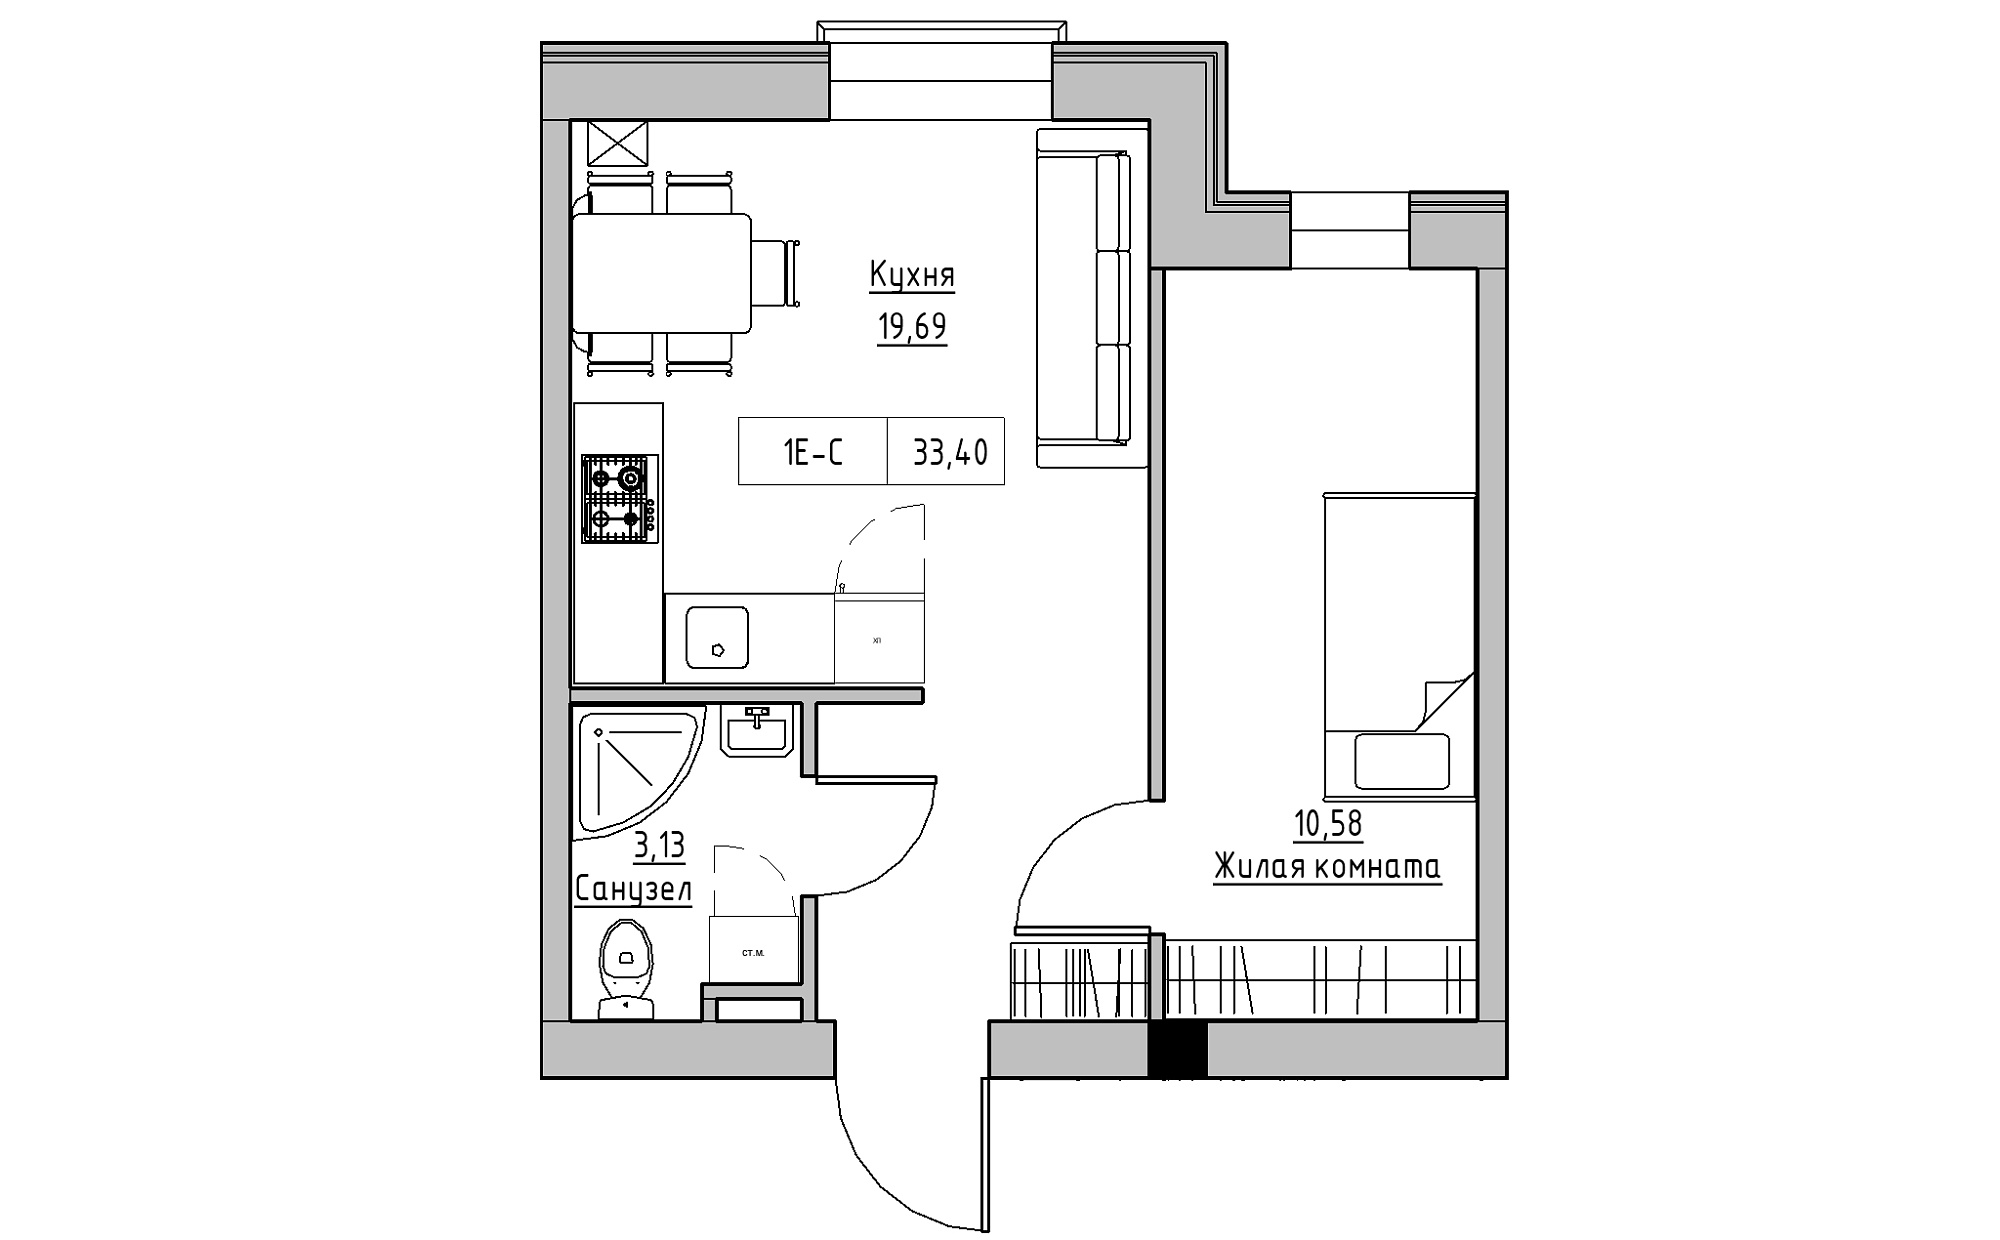 Планировка 1-к квартира площей 33.4м2, KS-022-01/0008.